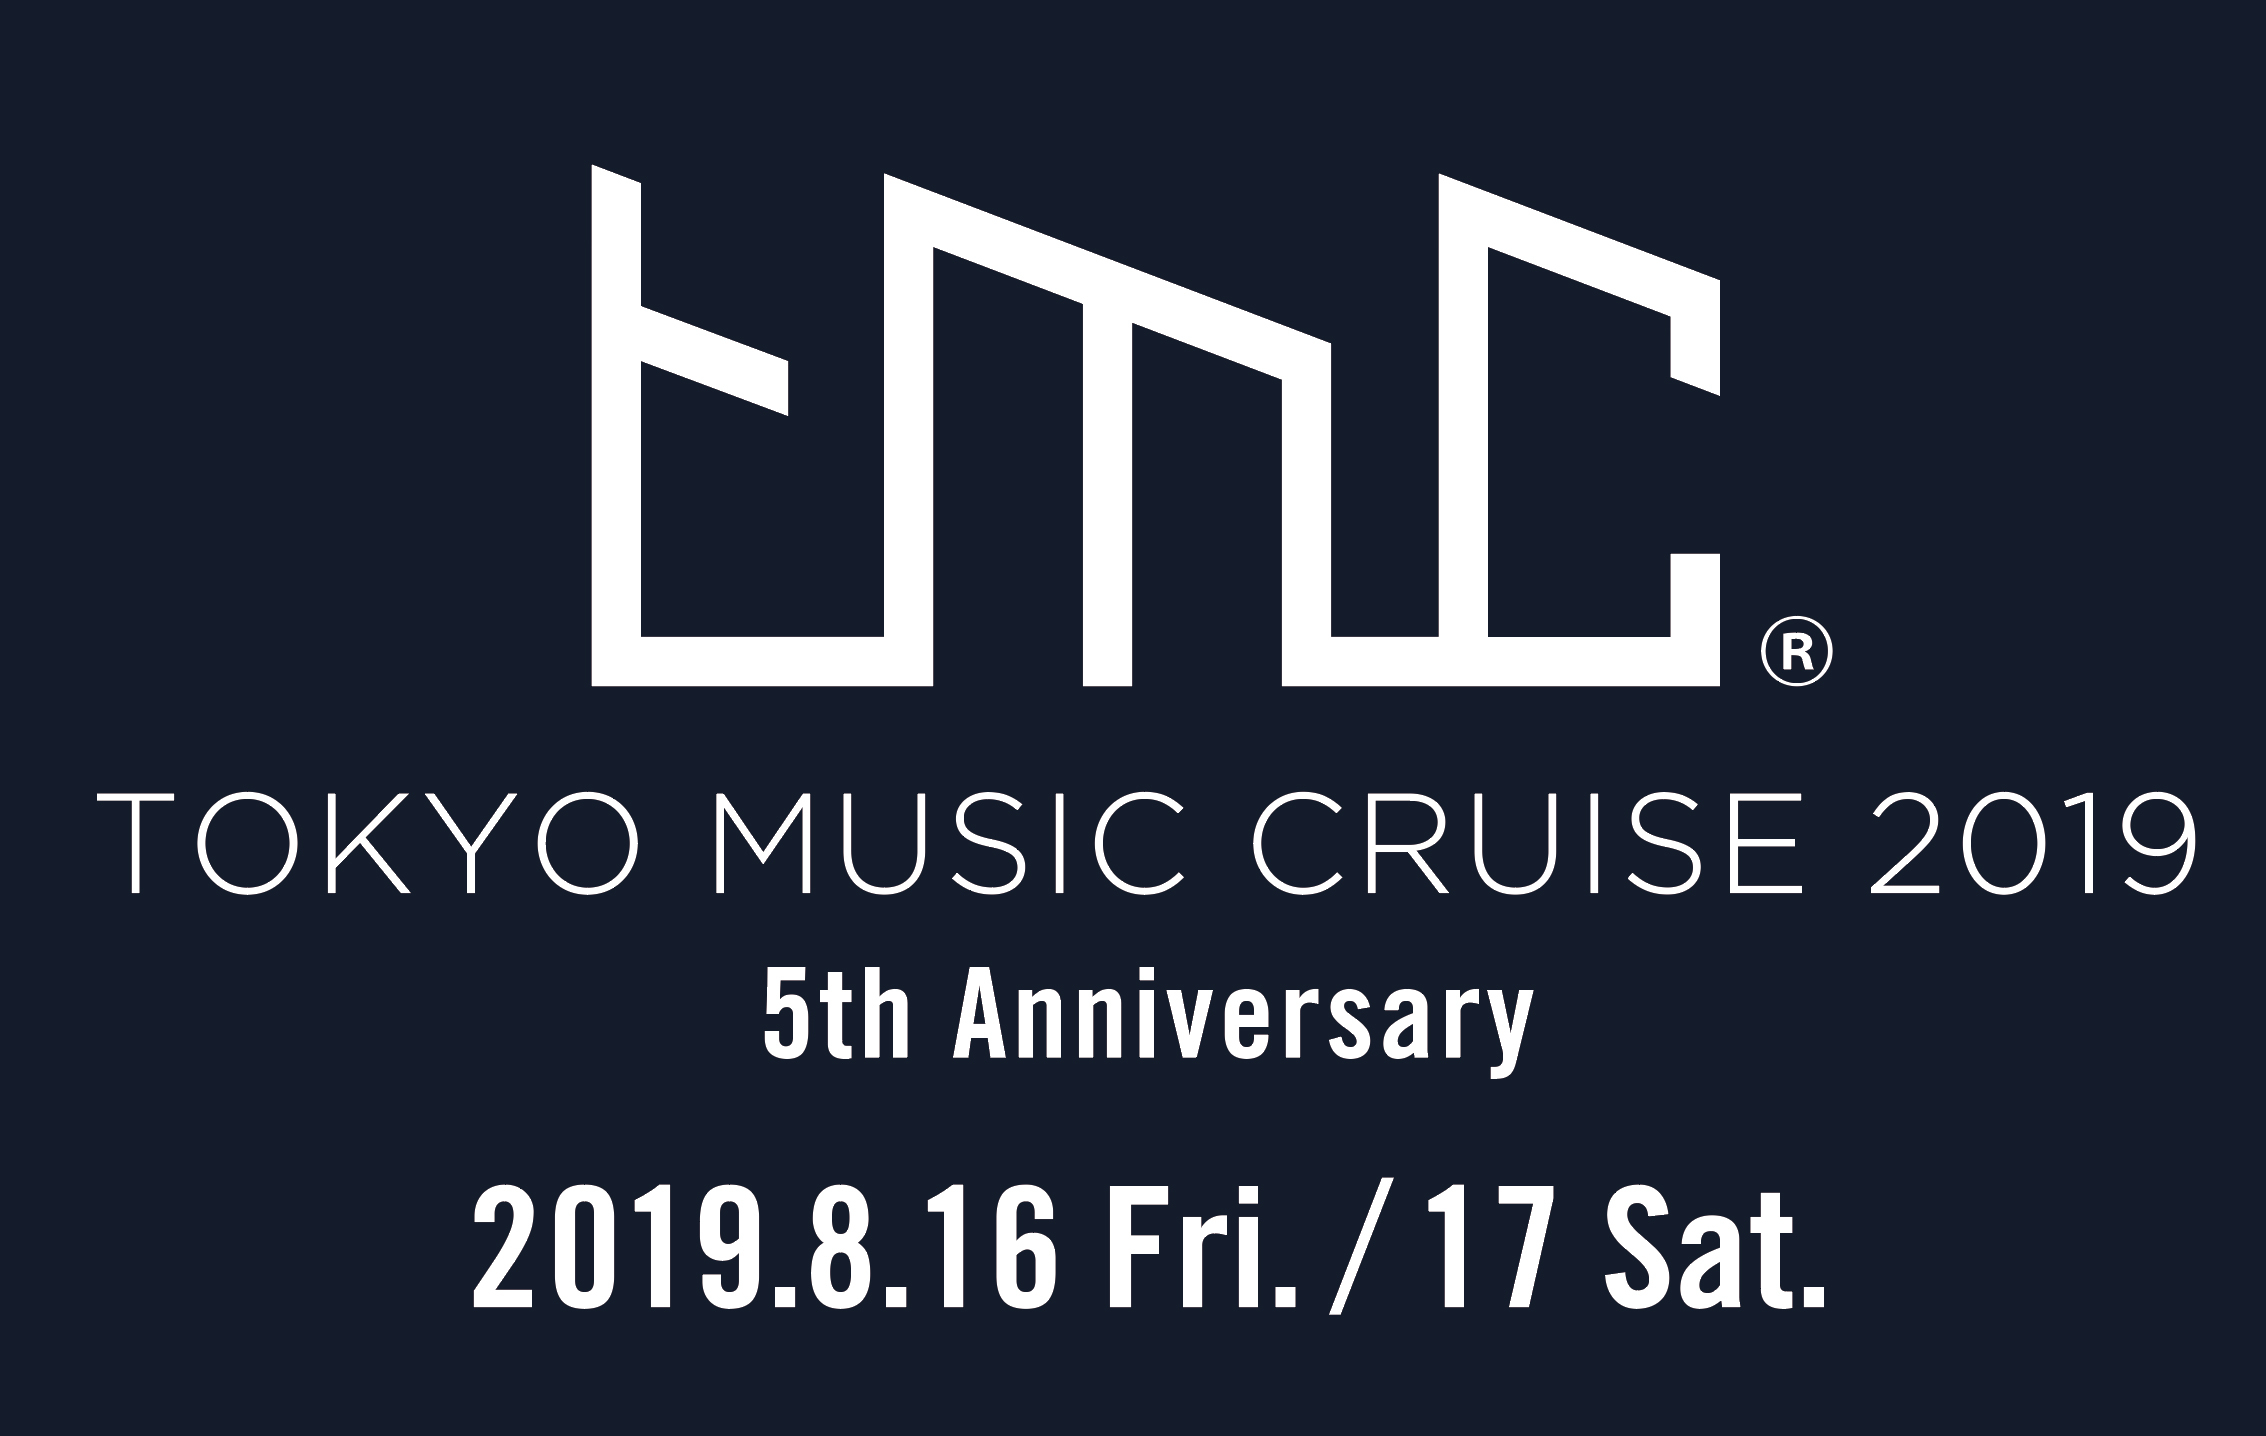 TOKYO MUSIC CRUISE 2019 5th Anniversary